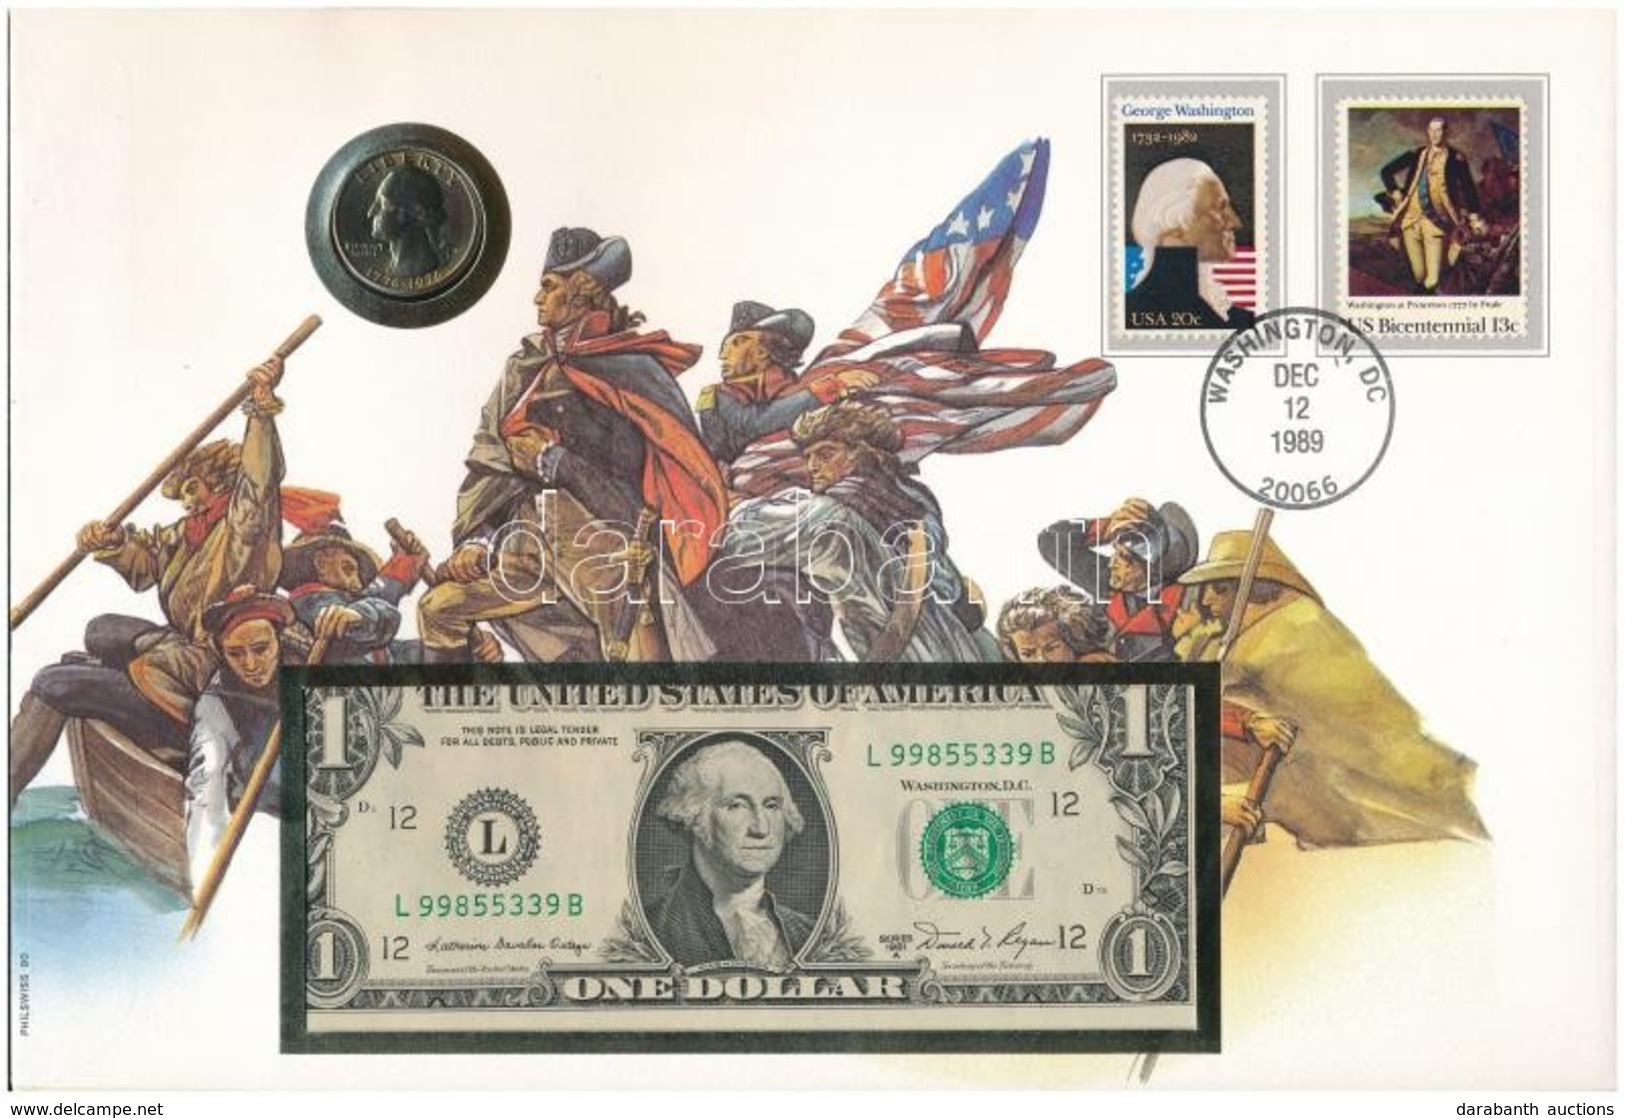 Amerikai Egyesült Államok érmés és Bankjegyes, Pecsételt Boríték Benne 1976. 25c Cu-Ni érmével és 1981. 2$ Bankjeggyel A - Unclassified